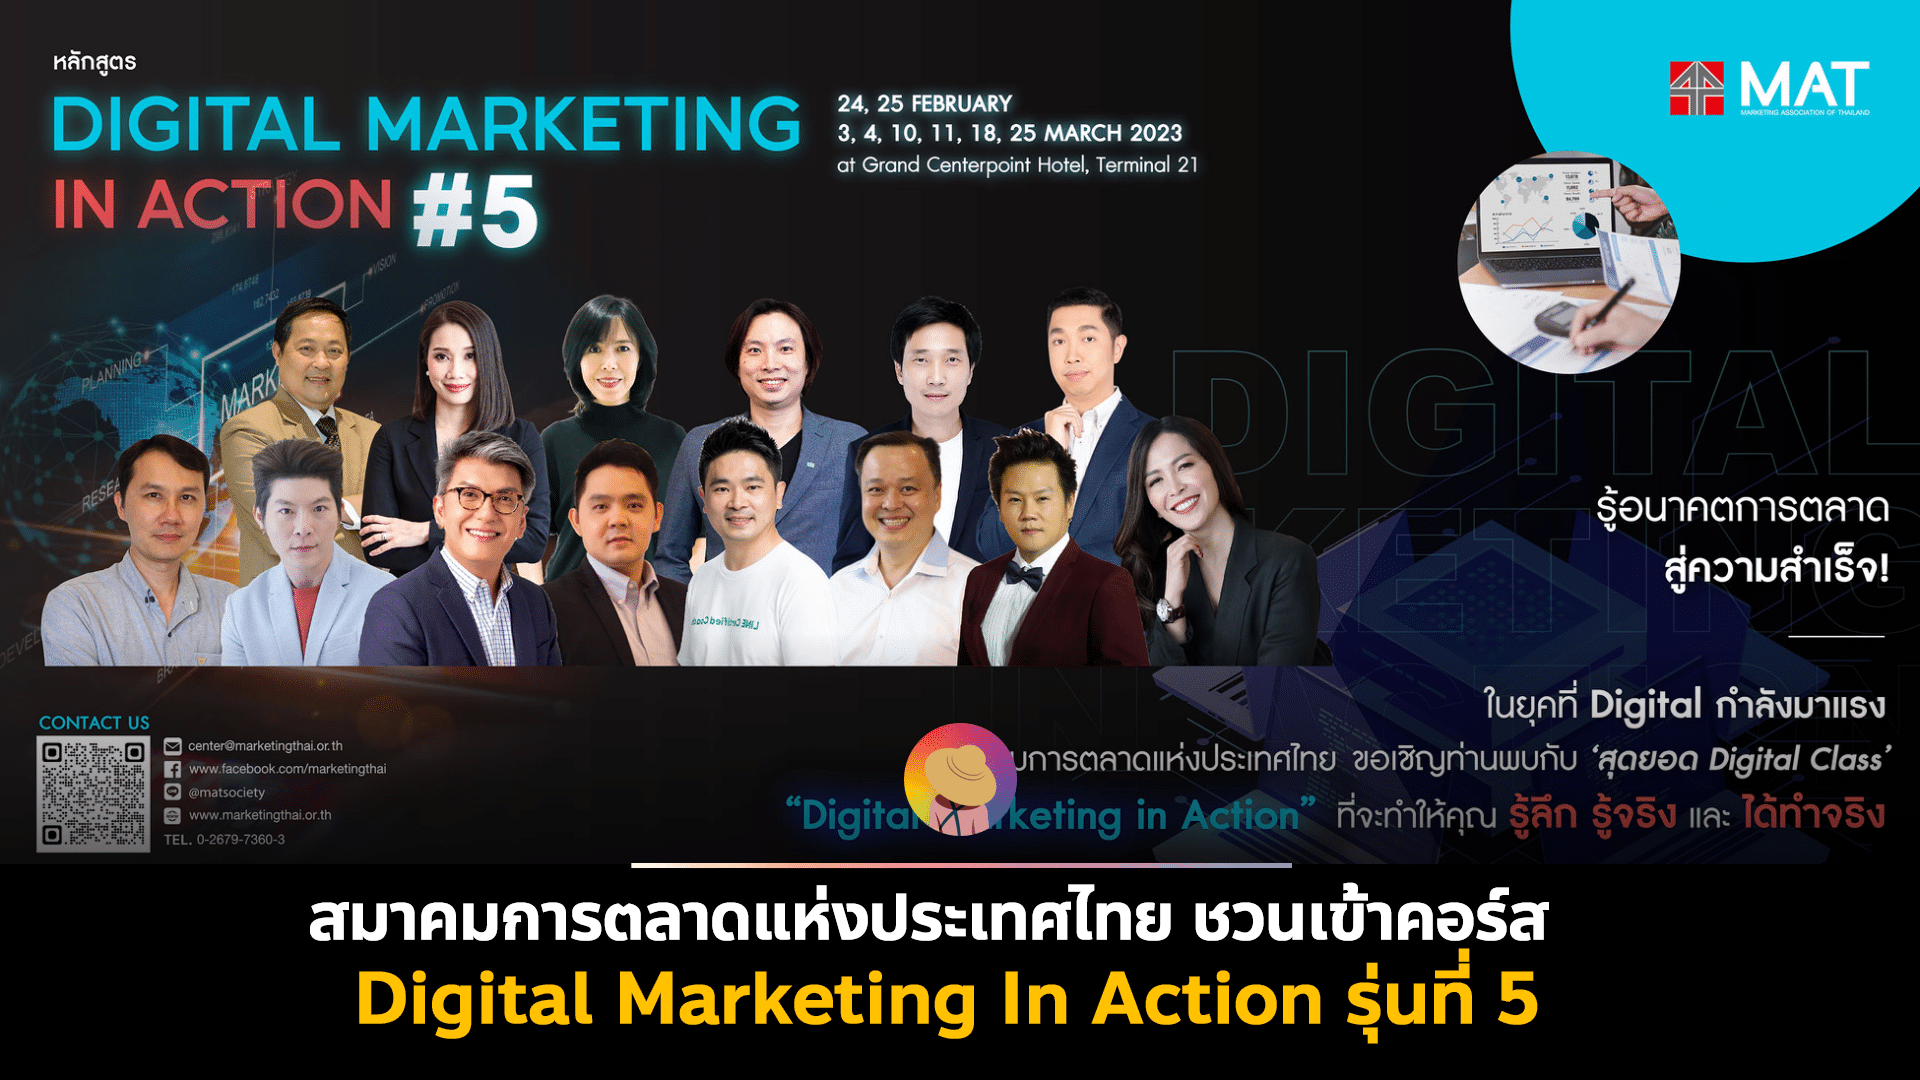 ‘Digital Marketing In Action รุ่นที่ 5’ รวม 14 ผู้เชี่ยวชาญในสายงานดิจิทัลไว้ที่เดียว